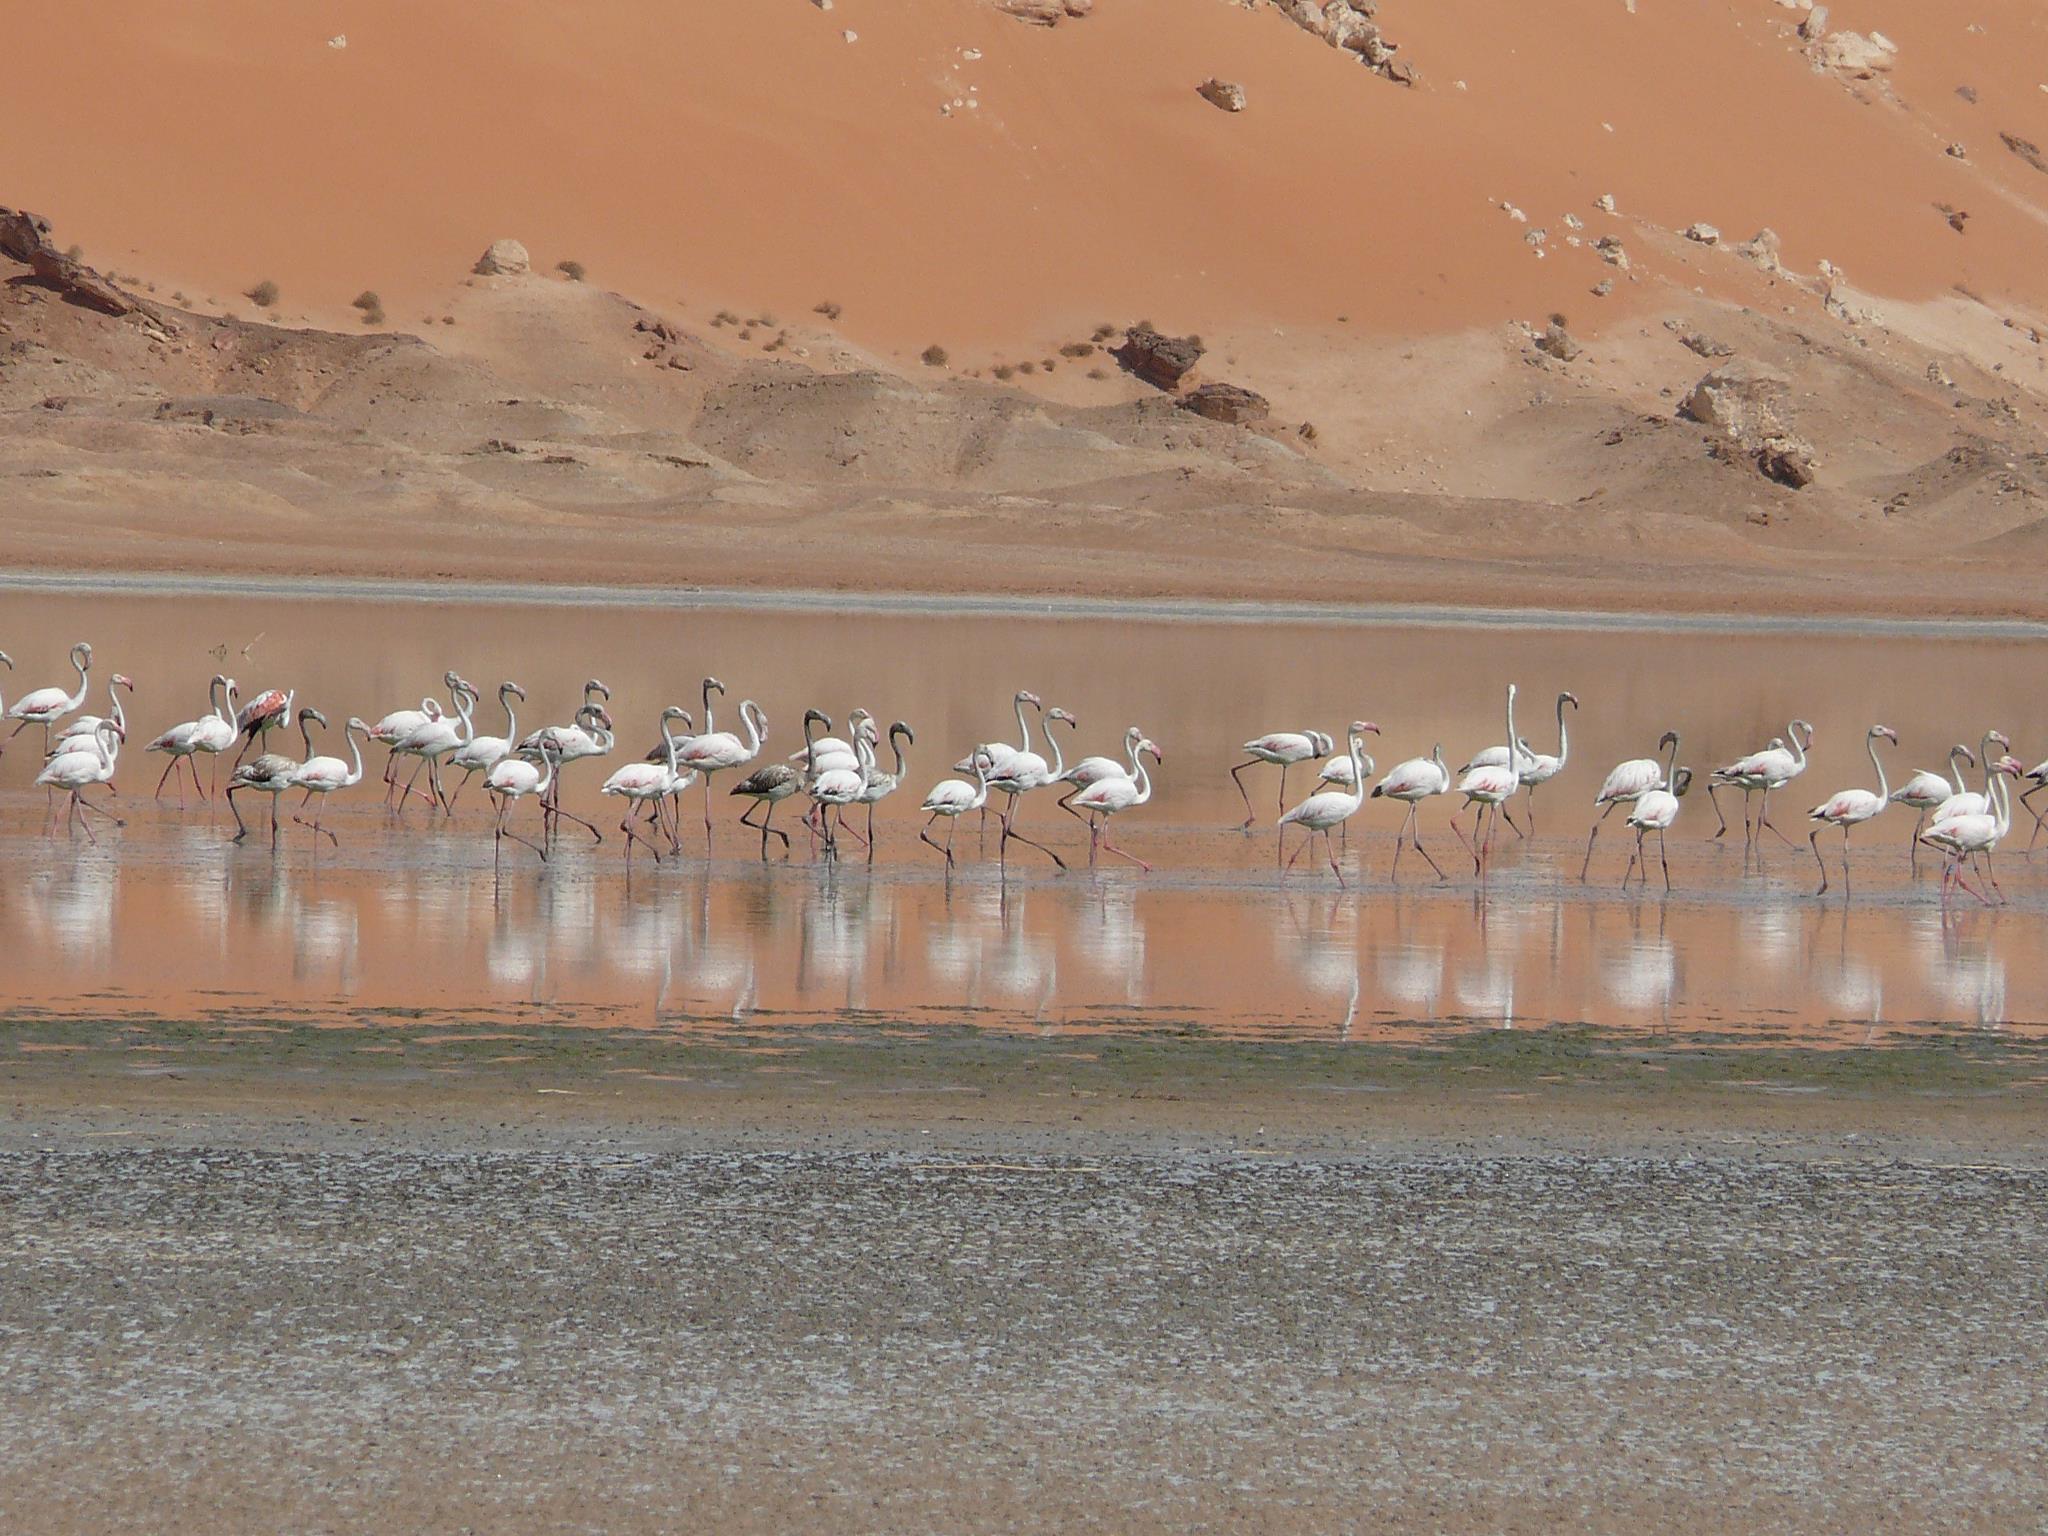 Plus de 5000 oiseaux migrateurs font une halte près d’El Menea